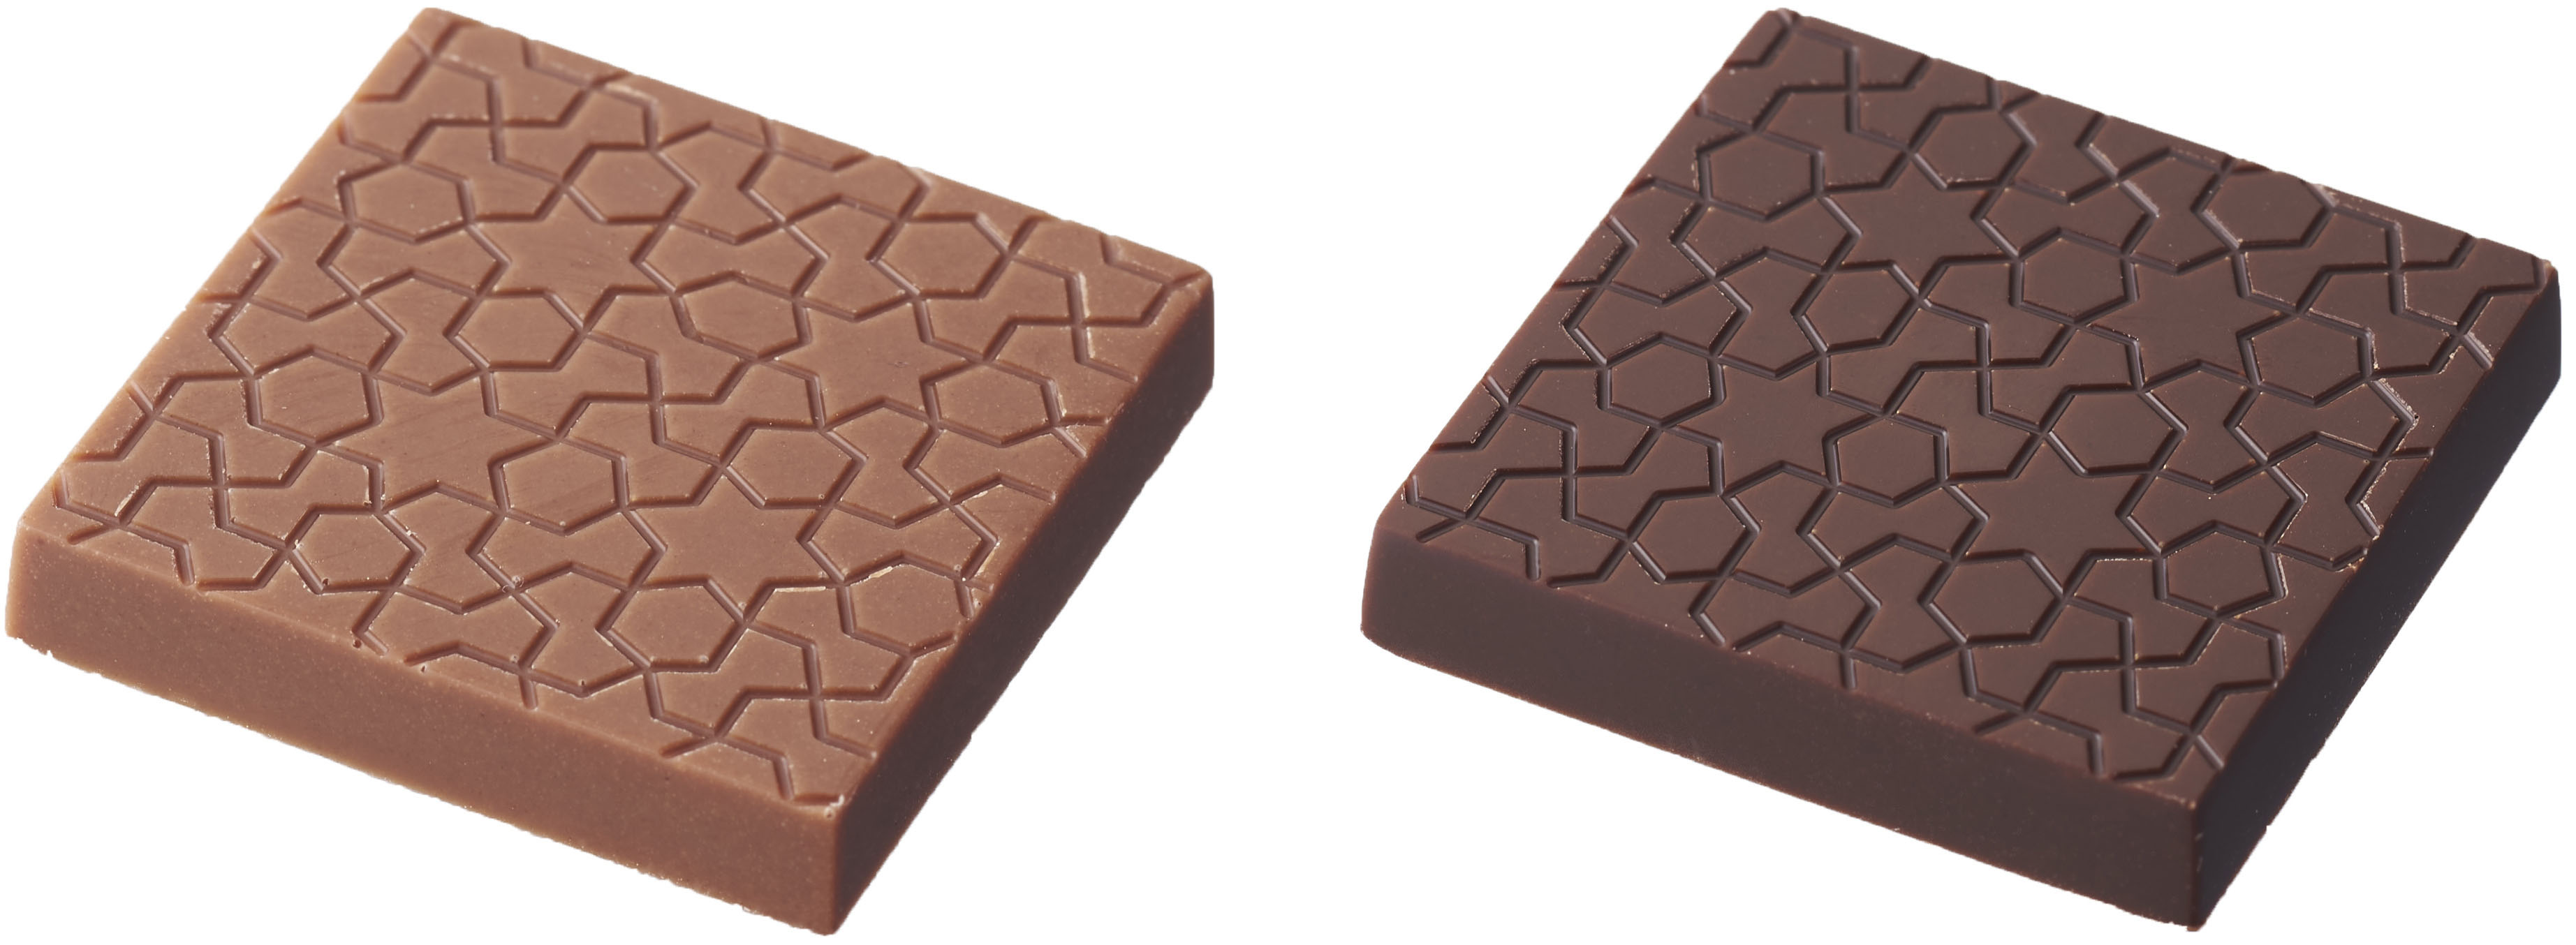 ベルギー王室御用達チョコレートブランド「ヴィタメール」2022年 チョコレートを存分に楽しめる期間限定ショコラを販売しまのサブ画像3